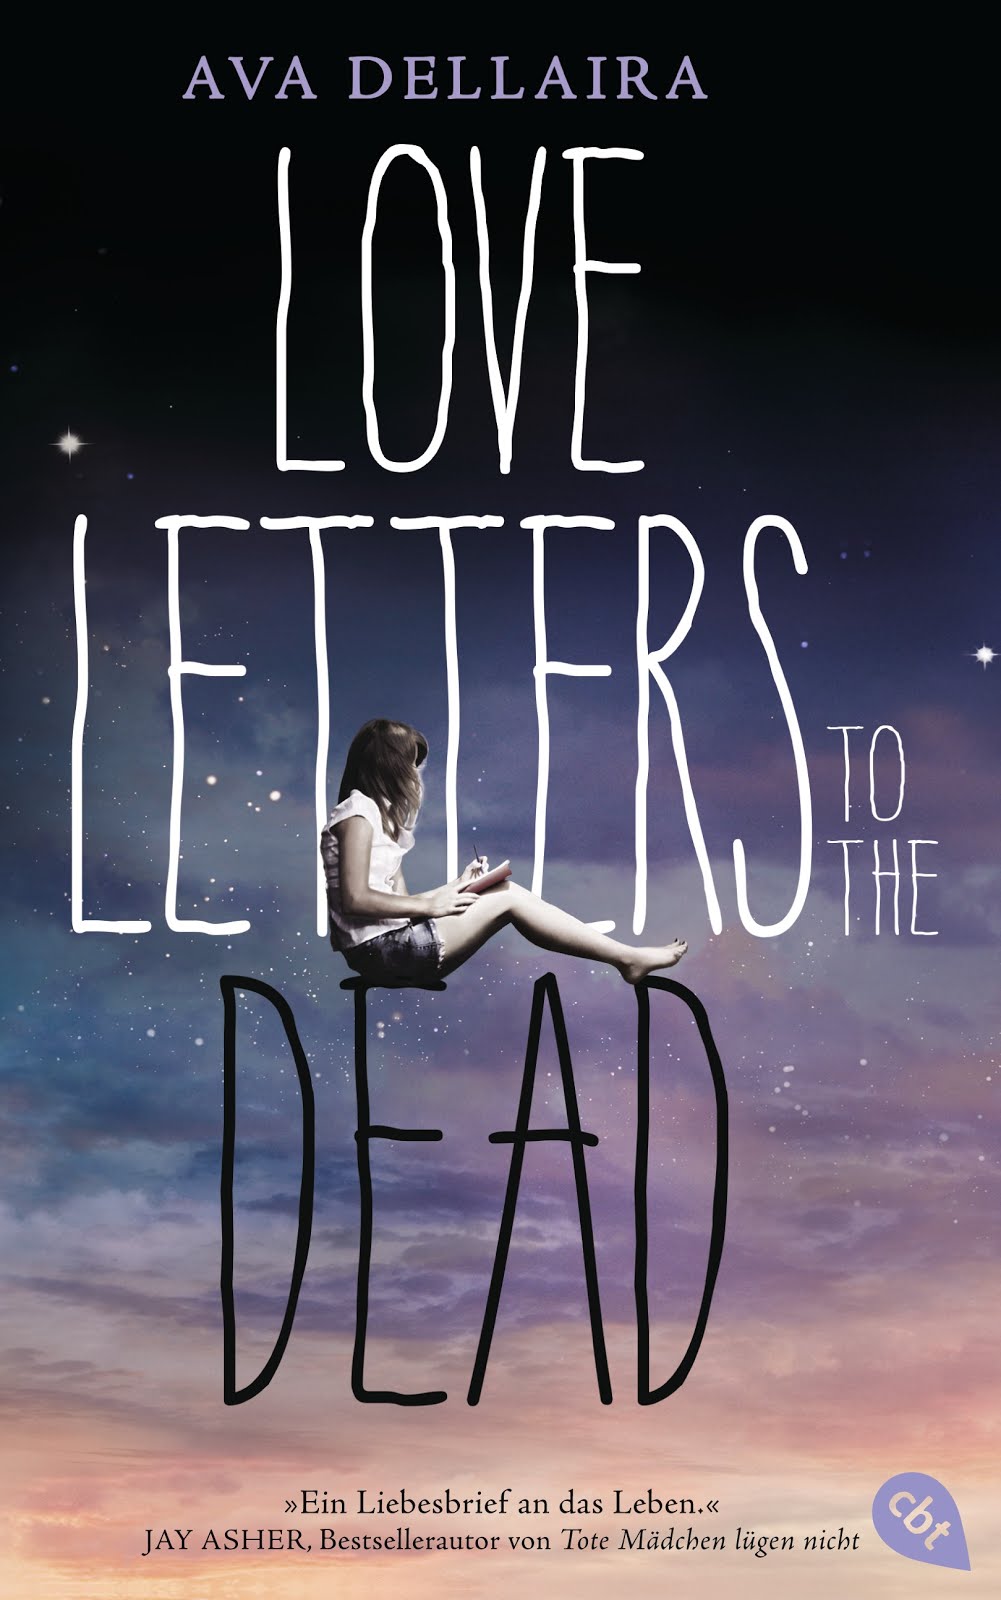 Love Letters to the Dead von Ava Dellaira das wurde ja eine zeitlang sehr gehypt und bei sowas bin ich sehr vorsichtig geworden